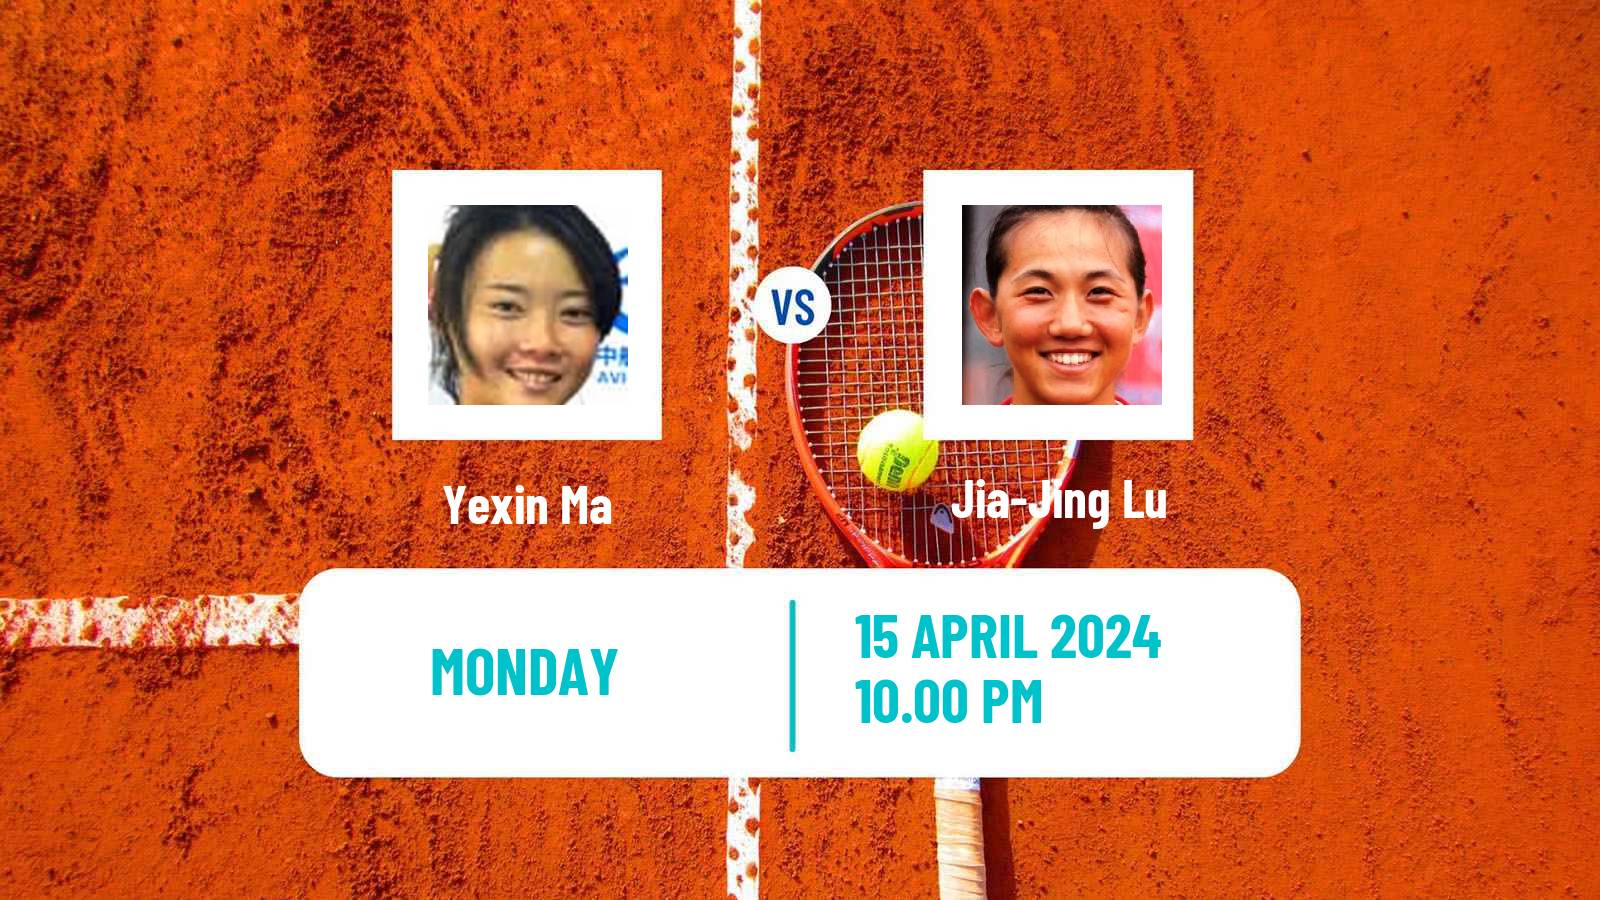 Tennis ITF W50 Shenzhen 2 Women Yexin Ma - Jia-Jing Lu